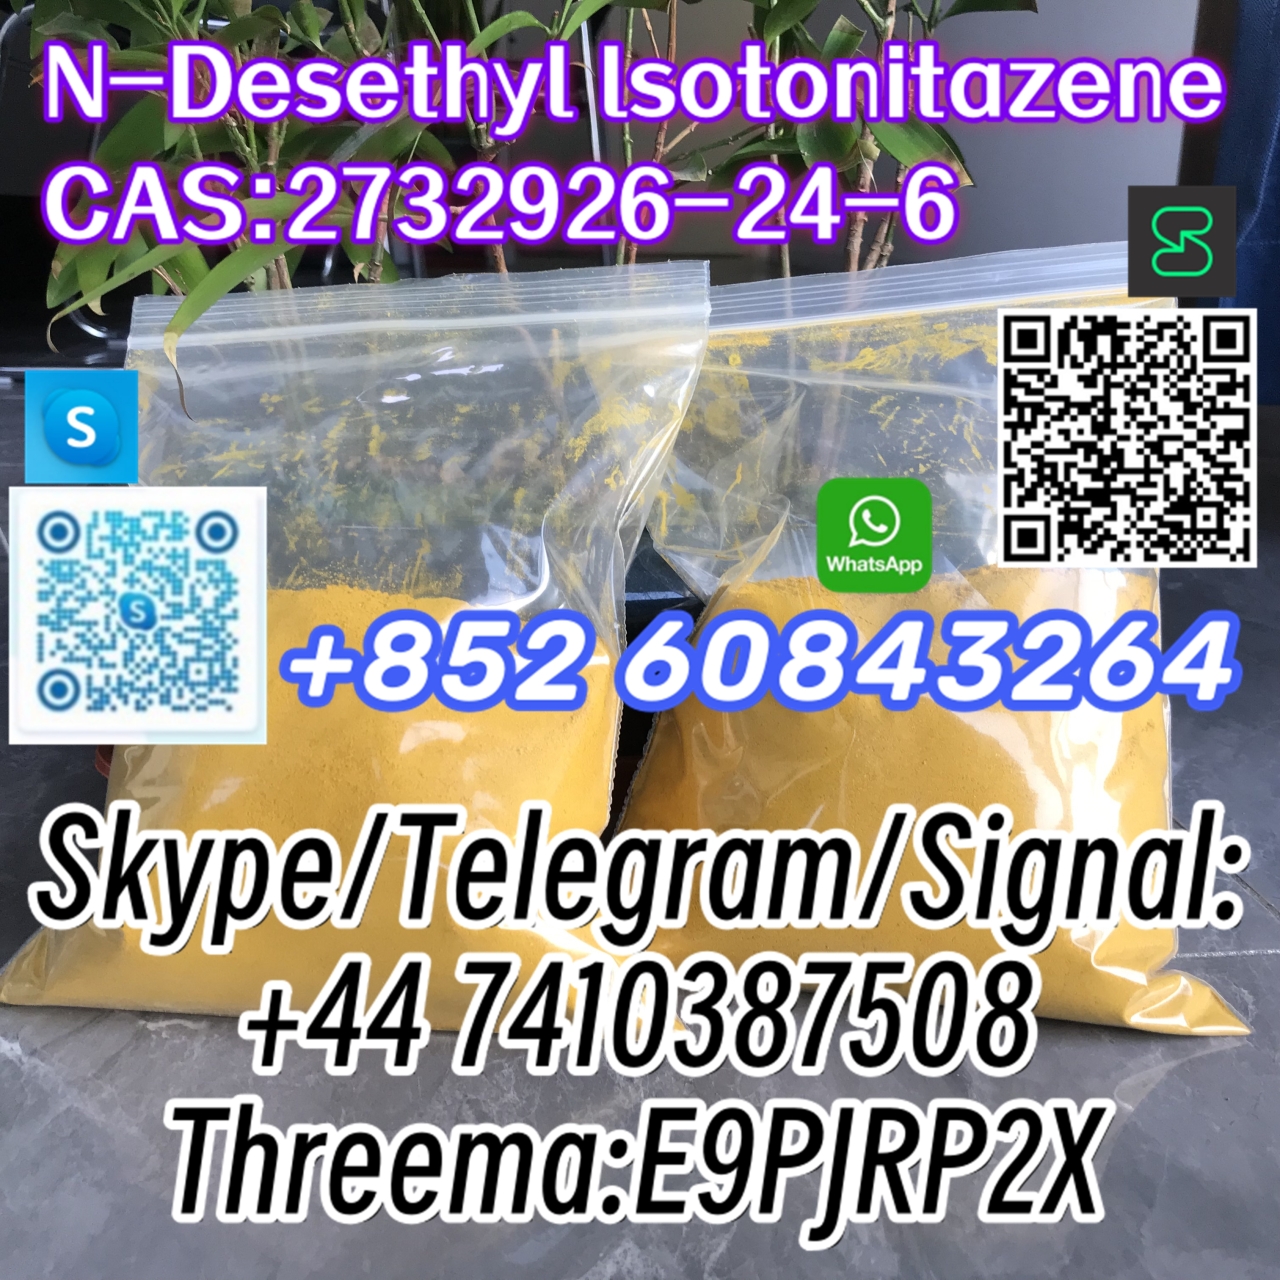 N-Desethyl lsotonitazene CAS:2732926-24-6 Skype/Telegram/Signal: +44 7410387508 Threema:E9PJRP2X-1 24.04.2024 - N-Desethyl lsotonitazene   CAS:2732926-24-6  Skype/Telegram/Signal:
+44 7410387508
Threema:E9PJRP2X